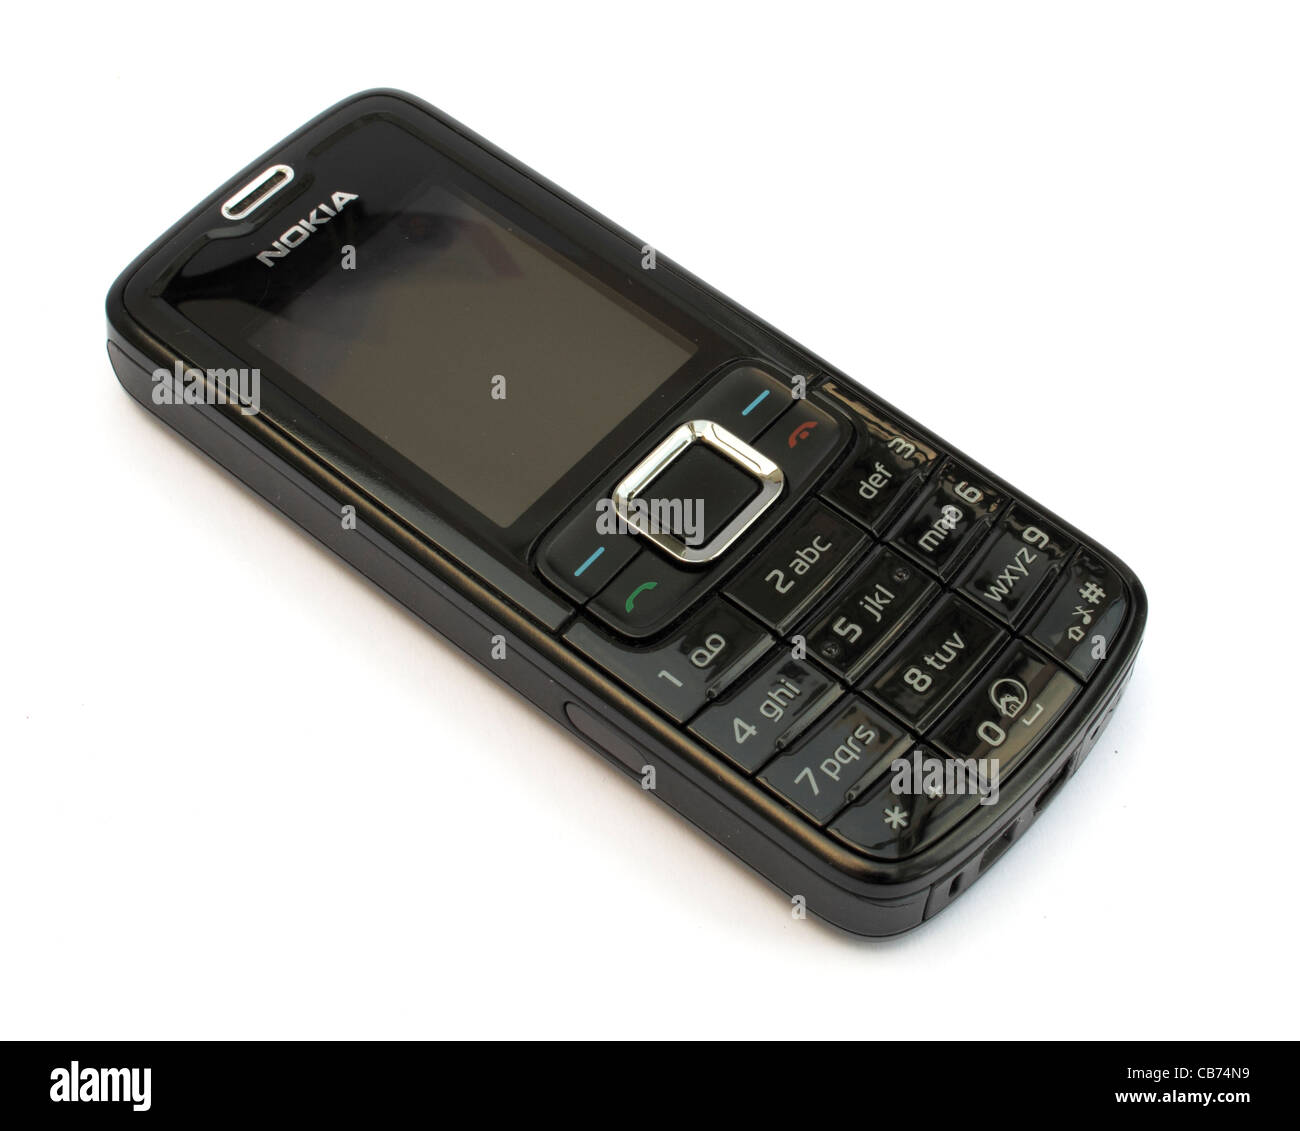 Ein einfaches Nokia Handy auf weißem Hintergrund Stockfotografie - Alamy